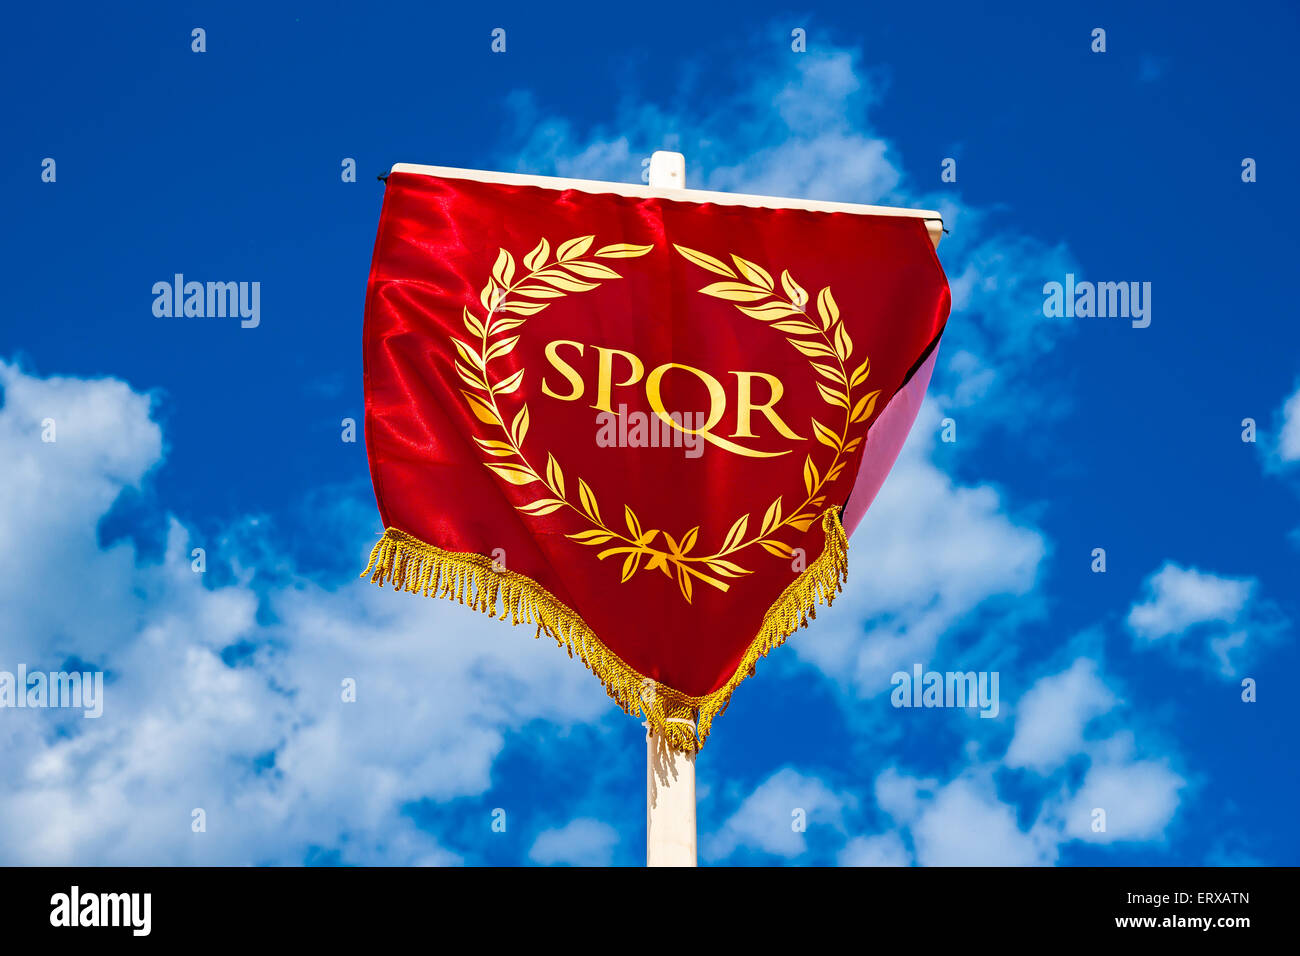 L'éternité. Vexillum SPQR romain - standard avec l'abréviation Senatus Populusque Romanus (le Sénat et de personnes de Rome) Banque D'Images